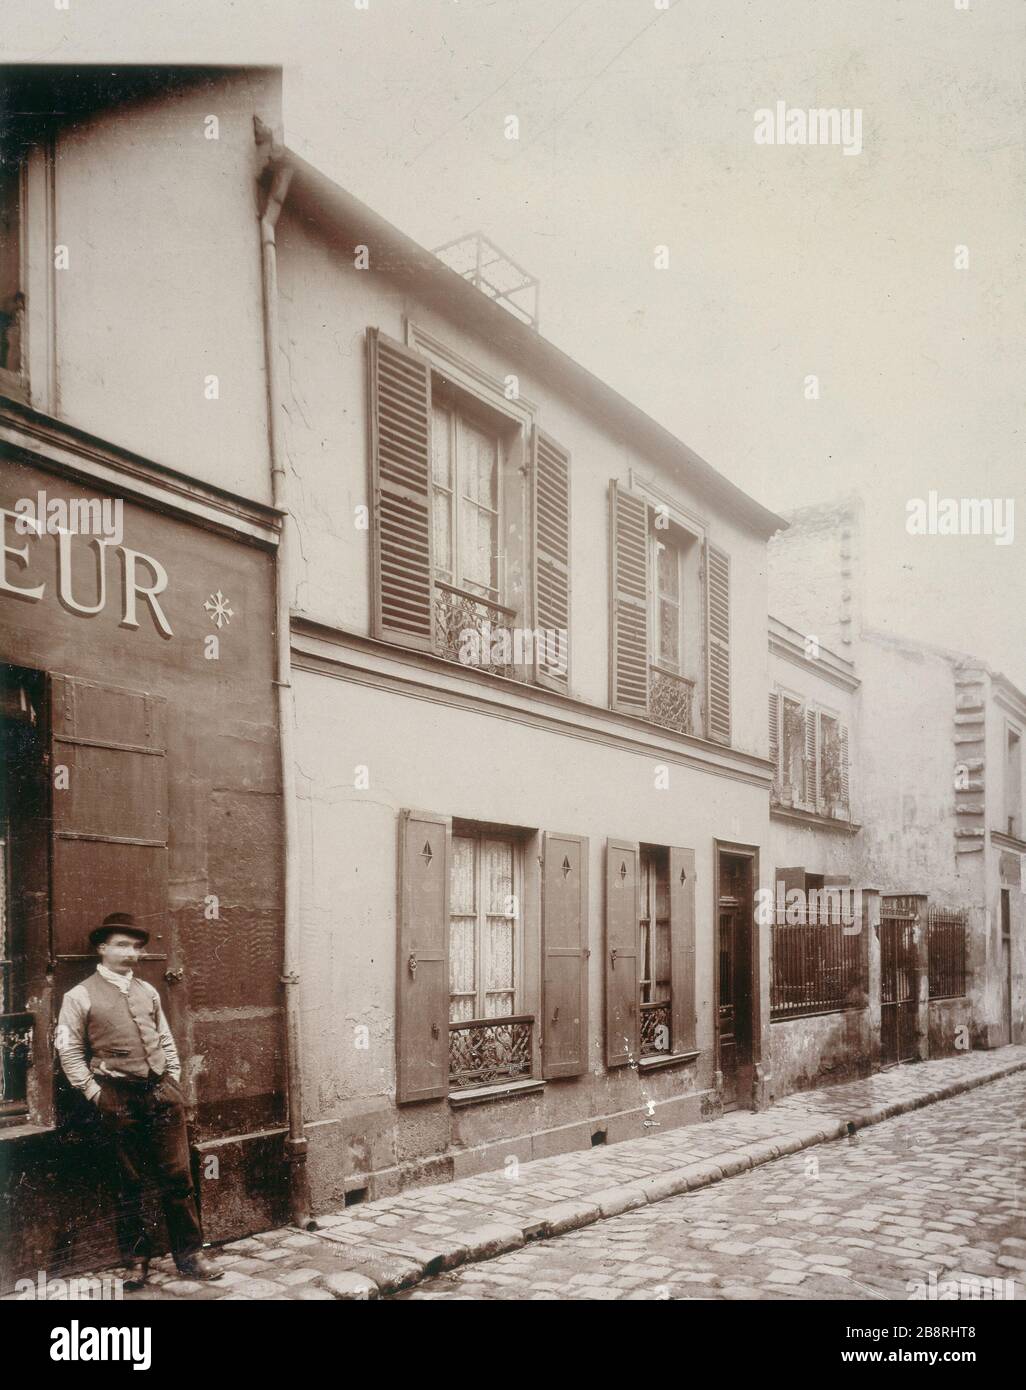 14 RUE PIAT 14, Rue Piat. Paris (XXème arr.). Union Photographique Française, vers. Paris, musée Carnavalet. Stockfoto